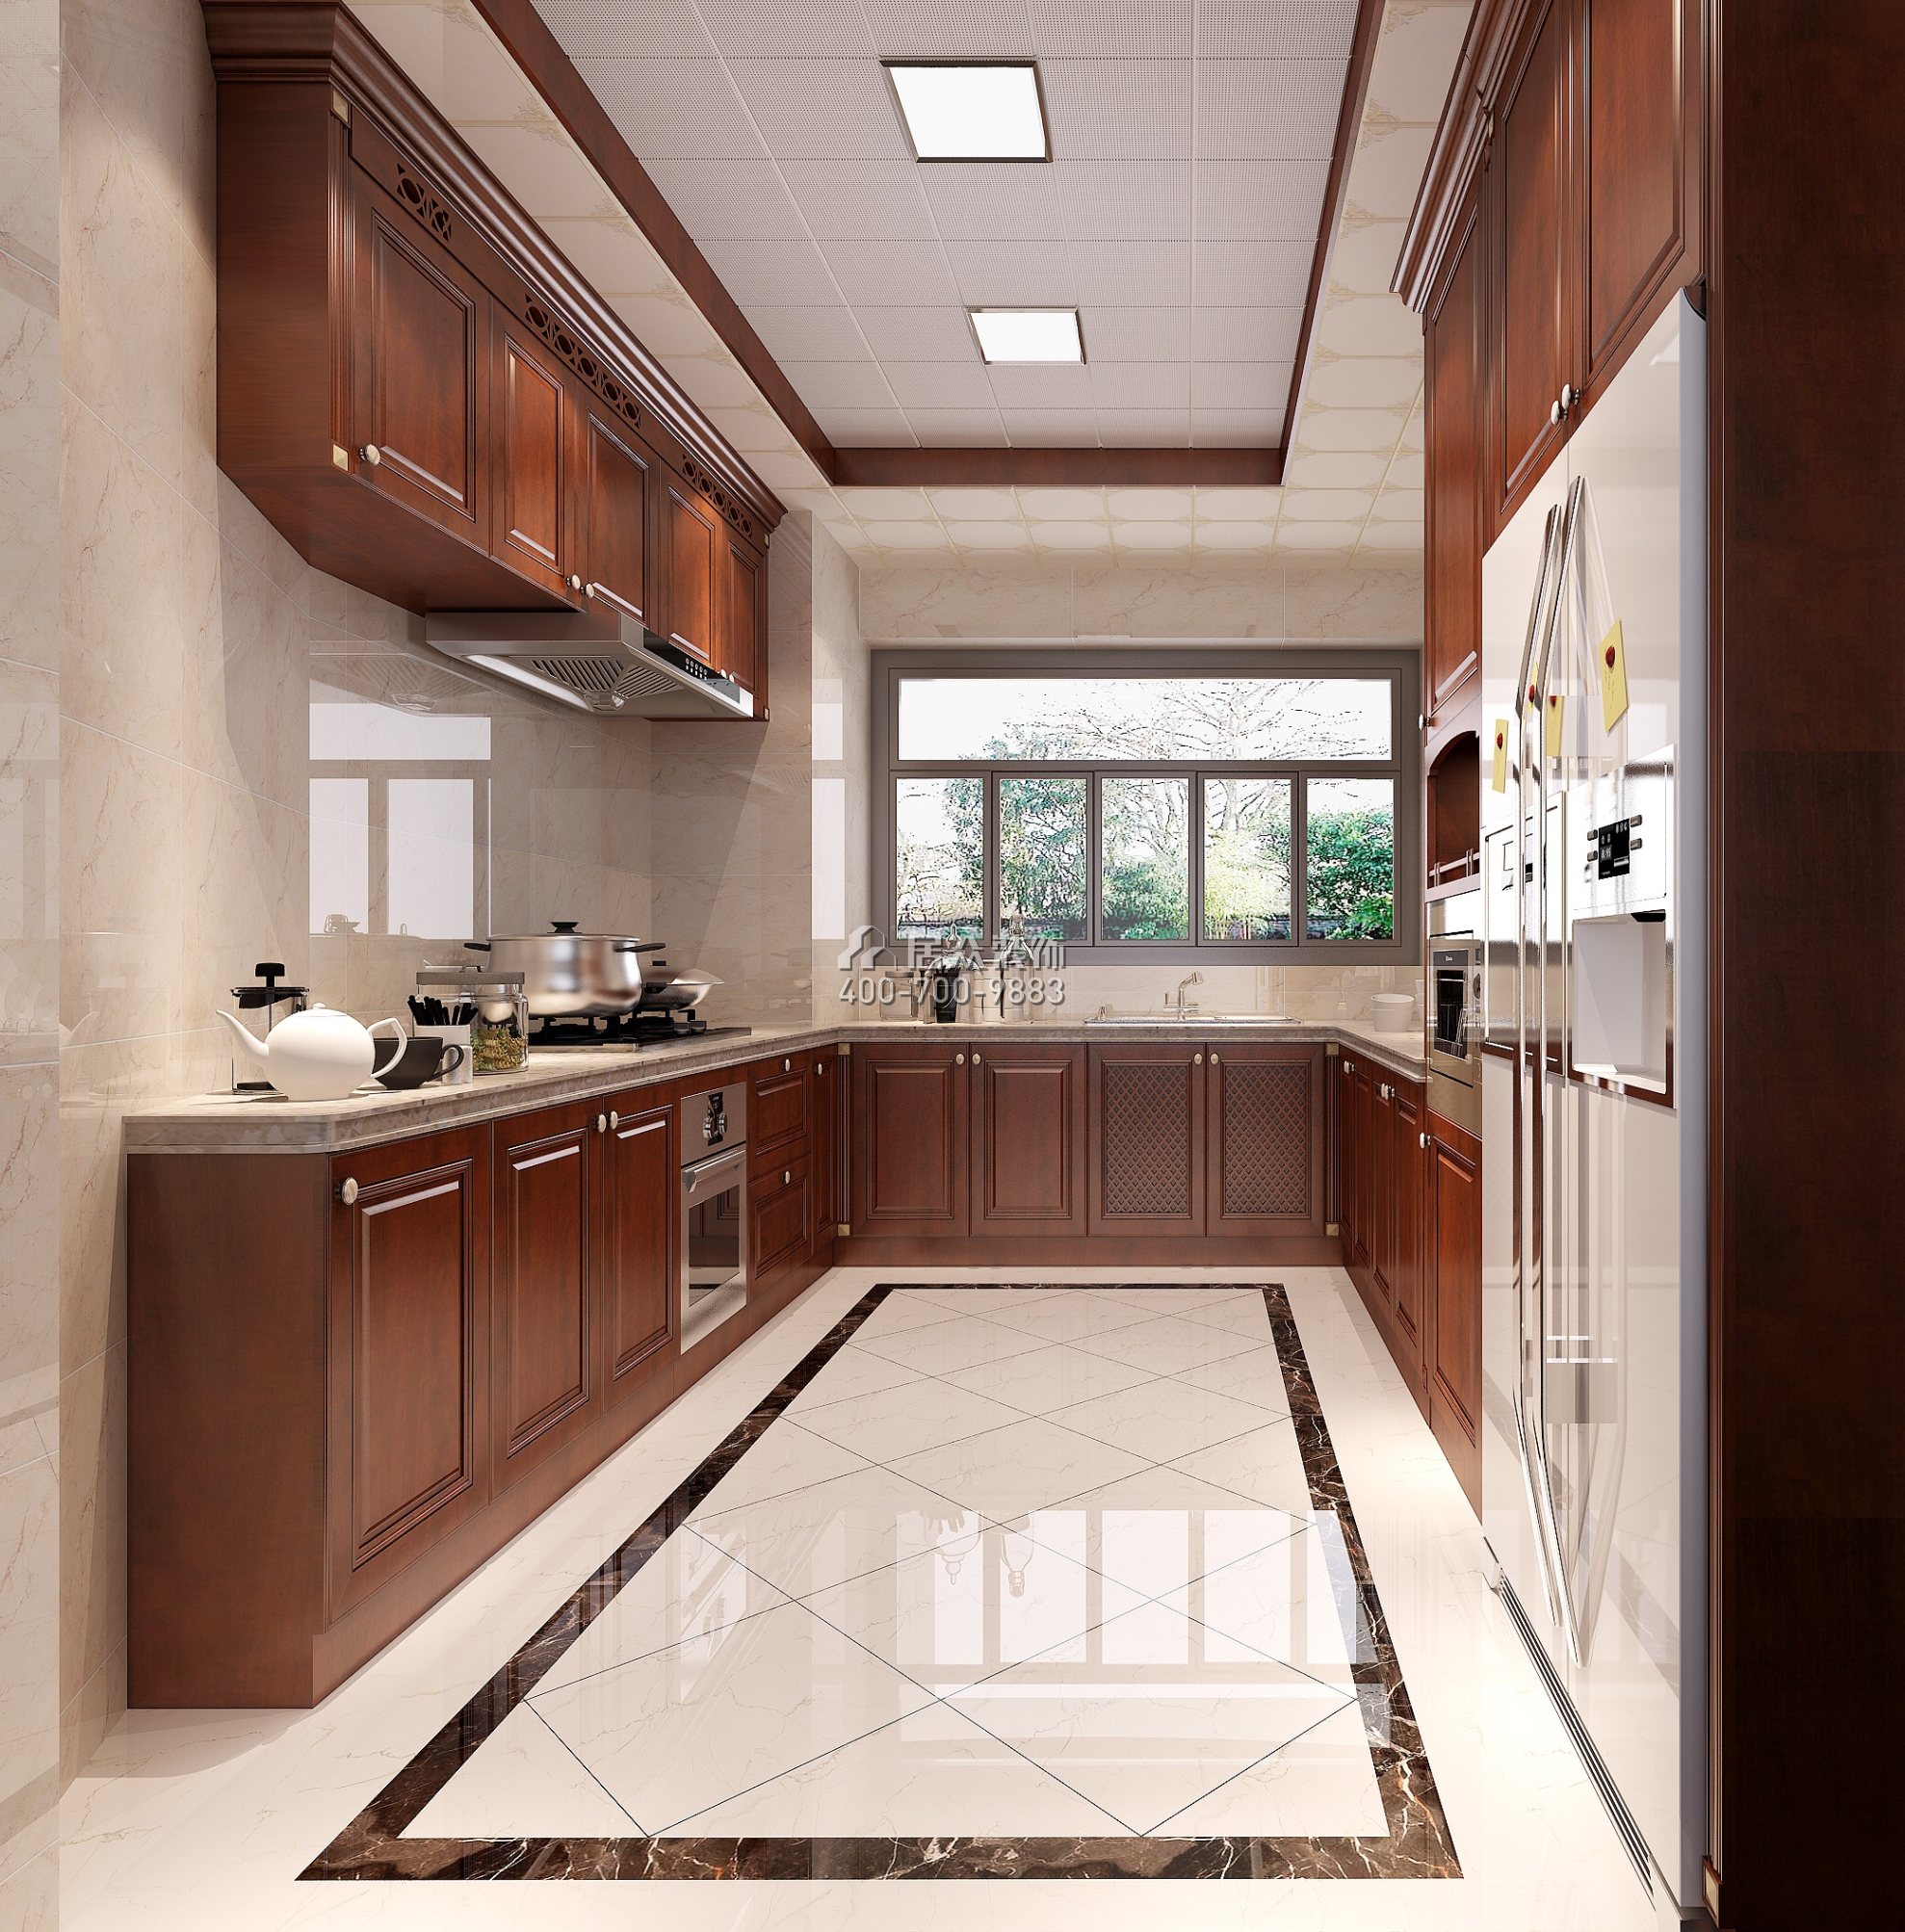 星河丹堤180平方米欧式风格平层户型厨房kok电竞平台效果图